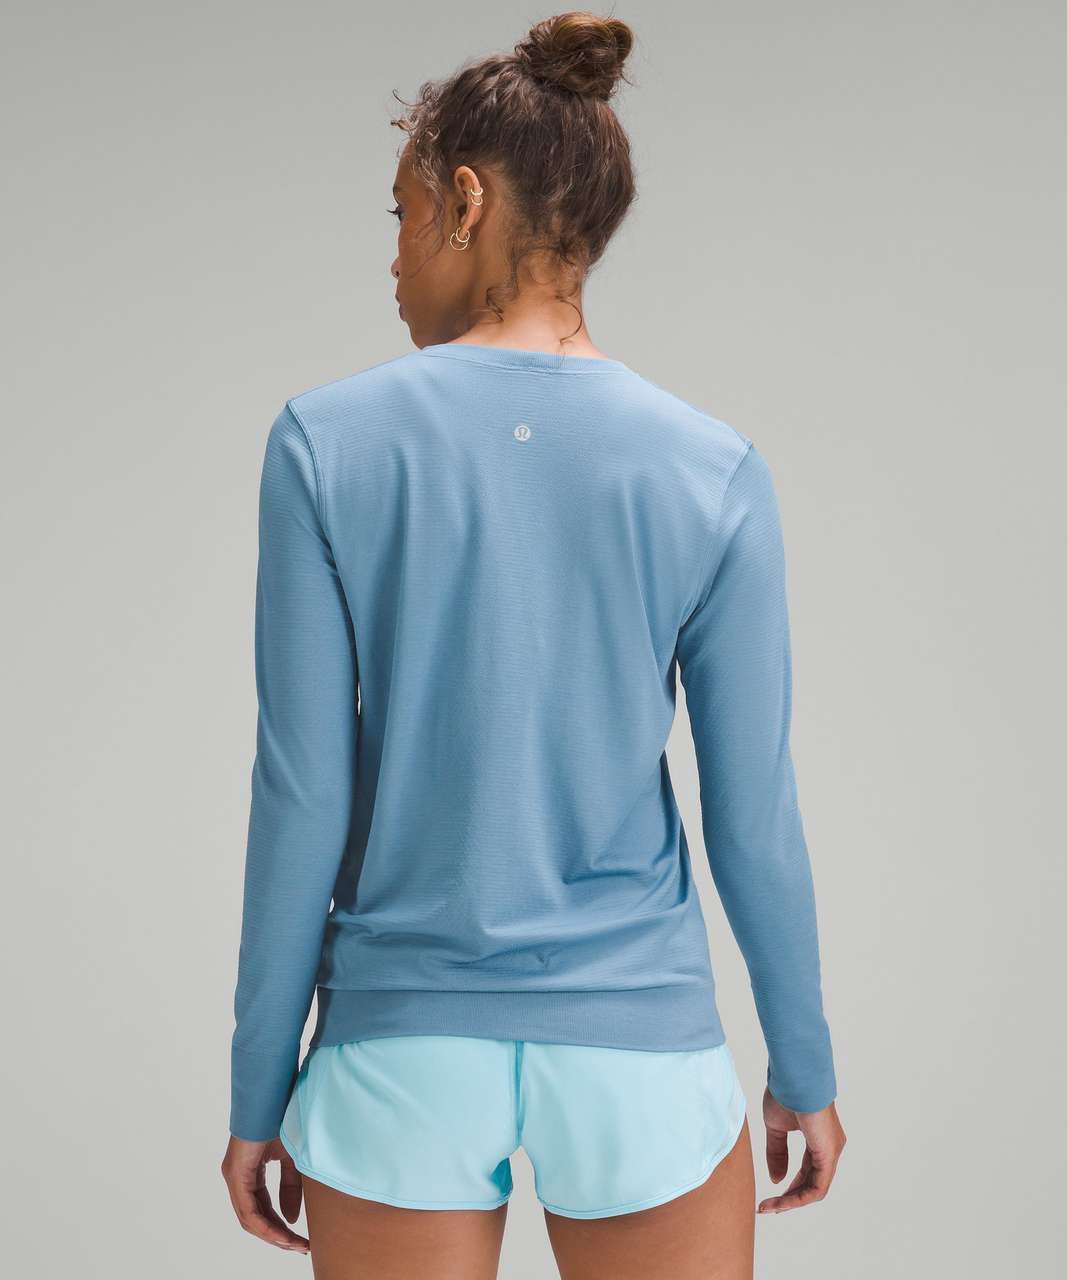 Lululemon Swiftly Relaxed Long-Sleeve Shirt - Utility Blue / Utility Blue